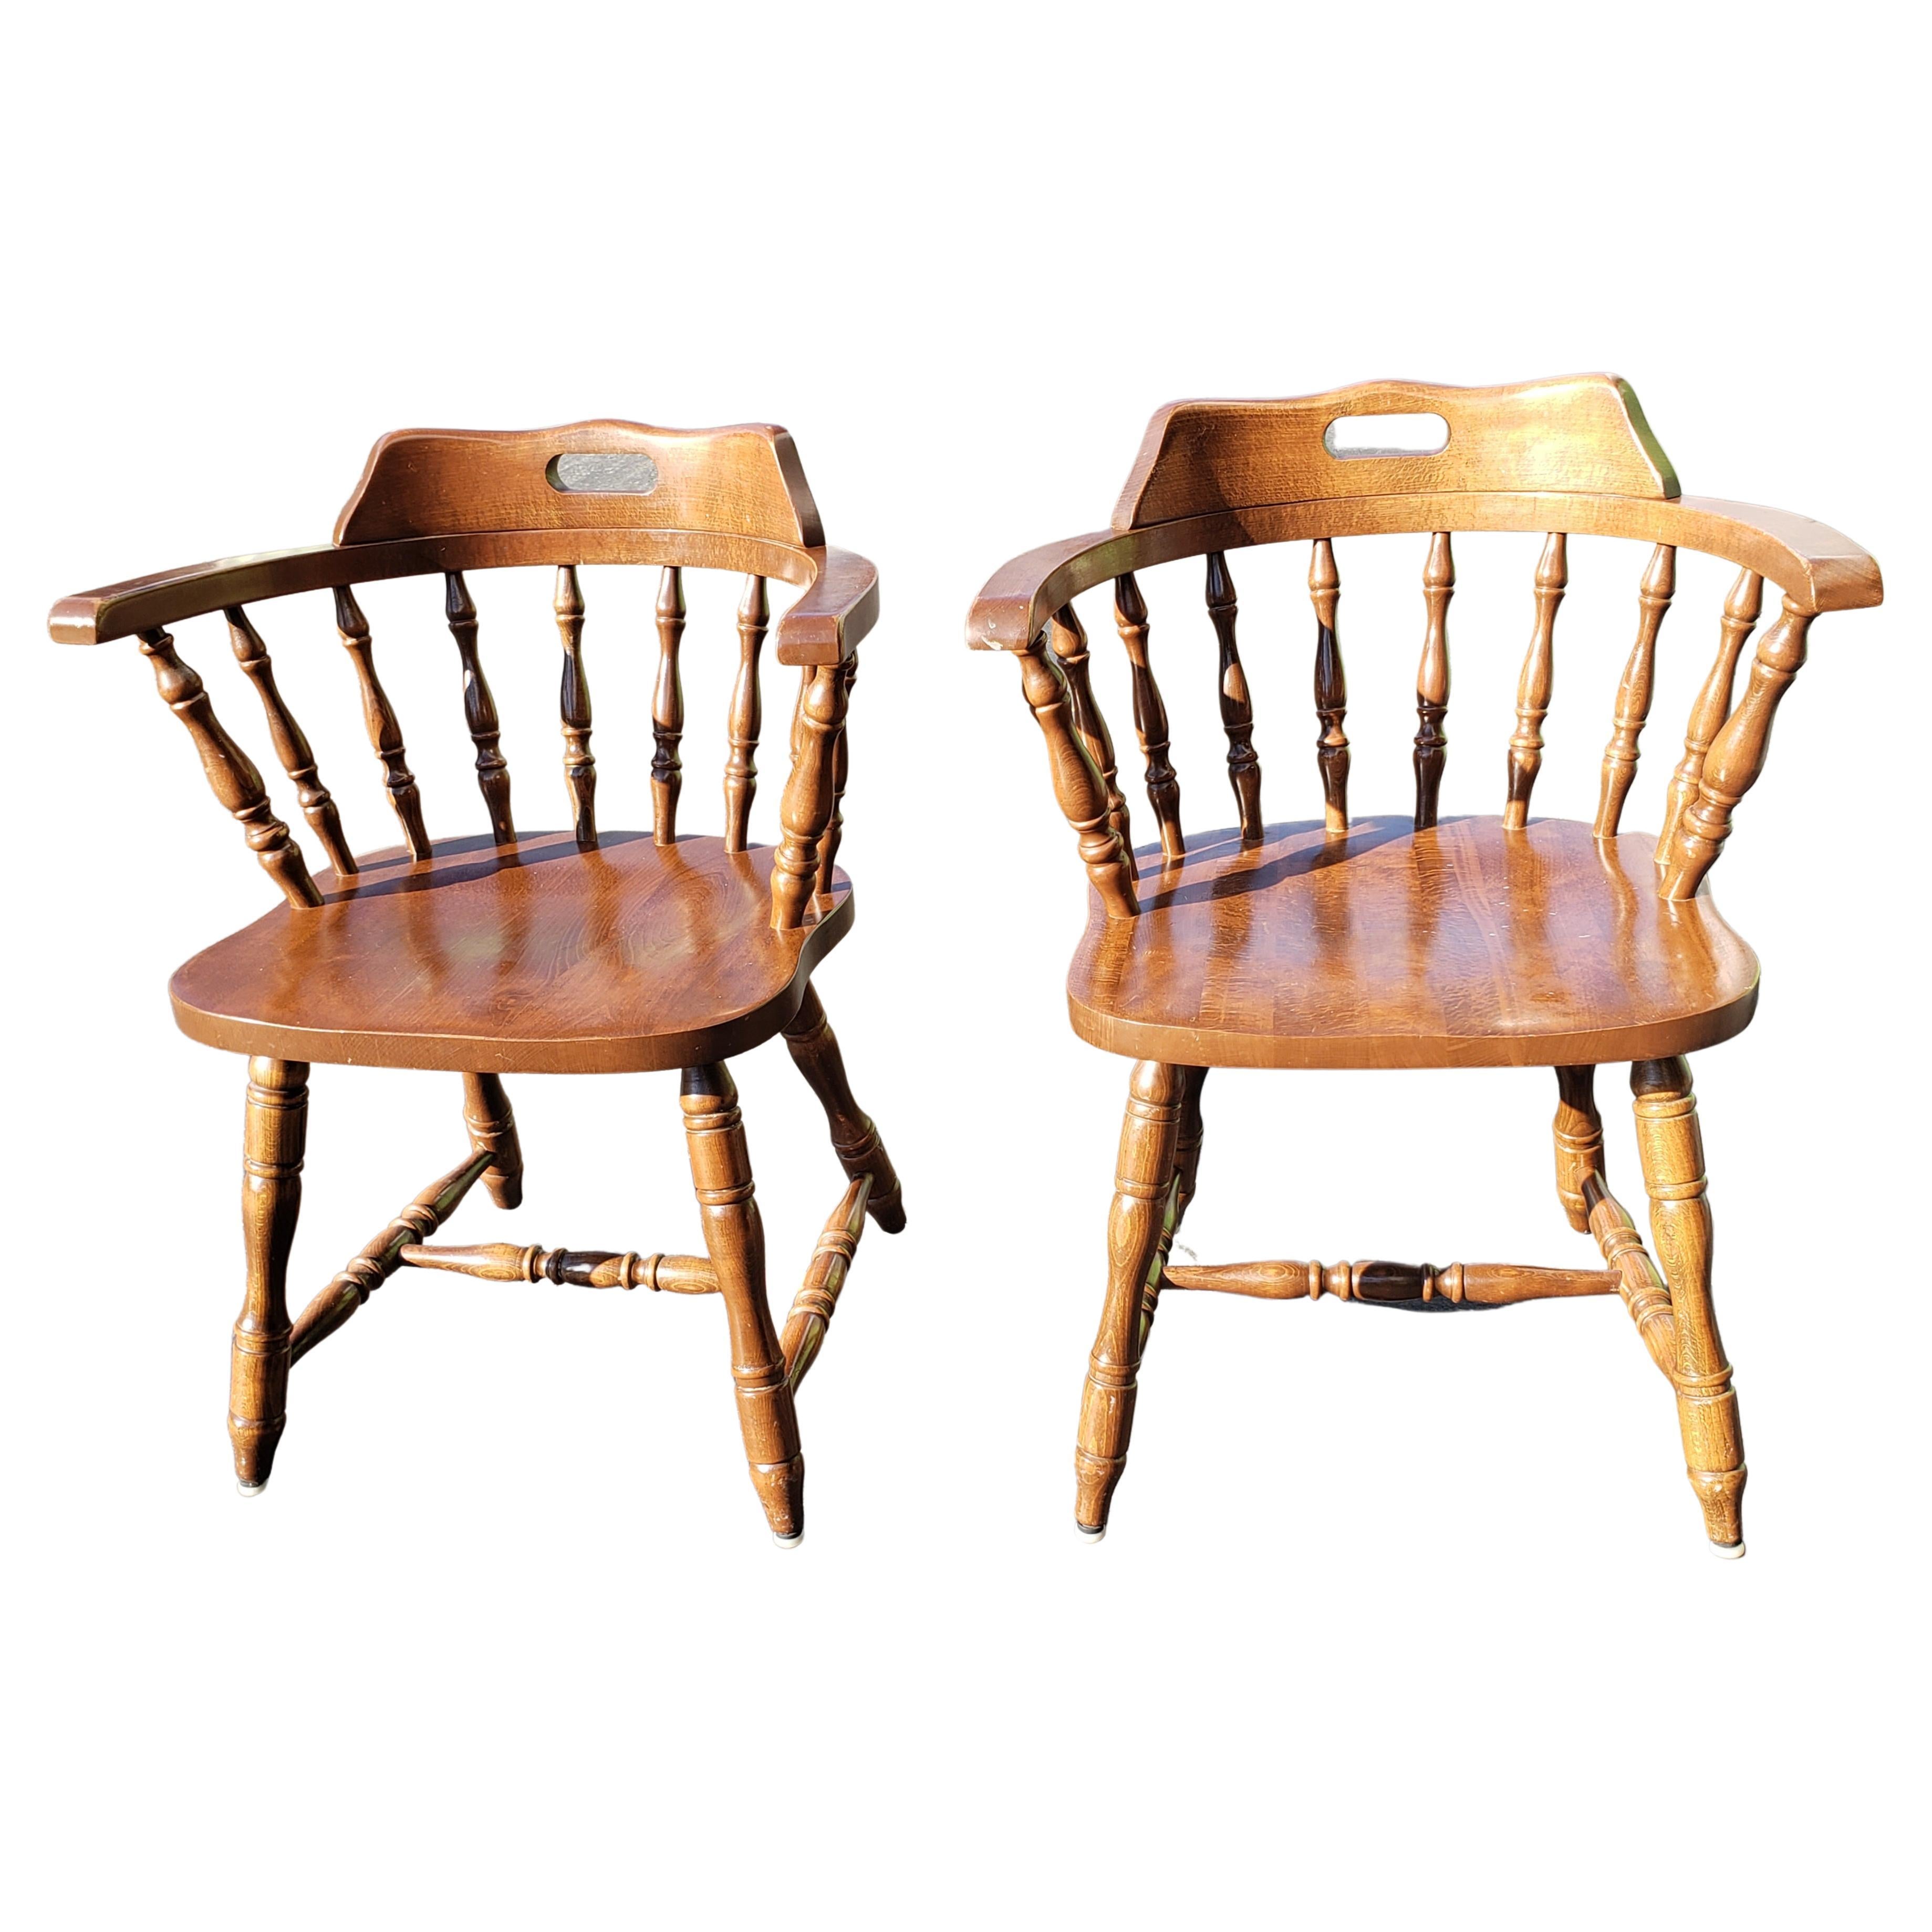 Ein schönes Paar slawischer Low-back Windsor Chairs aus massiver Kirsche aus den 1970er Jahren für die ehemalige Republik Jugoslawien, jetzt Mazedonien.
Sehr bequem und in gutem Vintage-Zustand. Einige Abnutzungserscheinungen entsprechend dem Alter